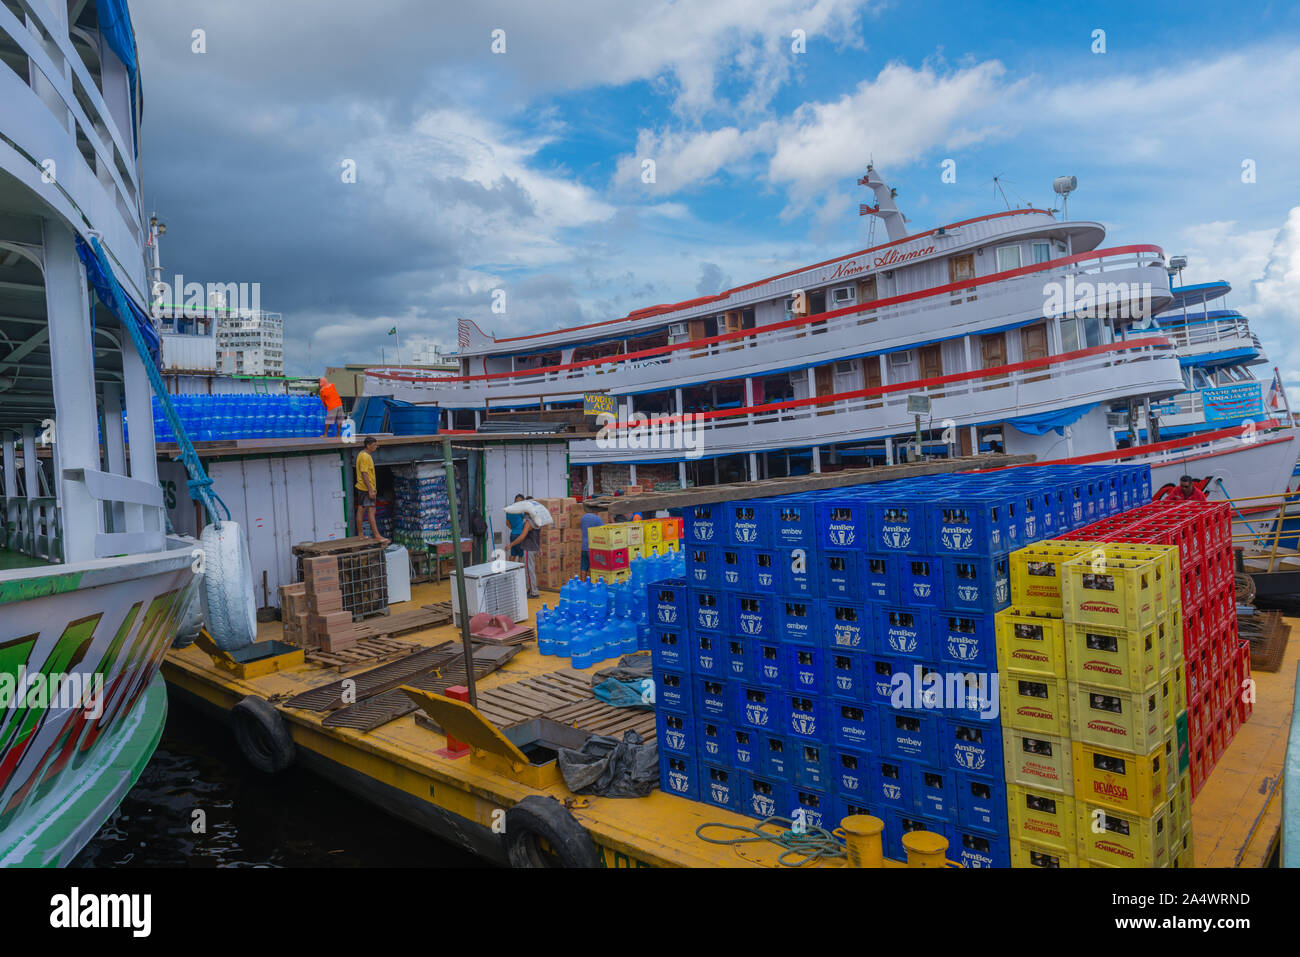 Le Flutante Porto ou flottante, port bateaux lents d'être chargés pour leur Amazon tour, Manaus, Amazonie, Brésil, Amérique Latine Banque D'Images